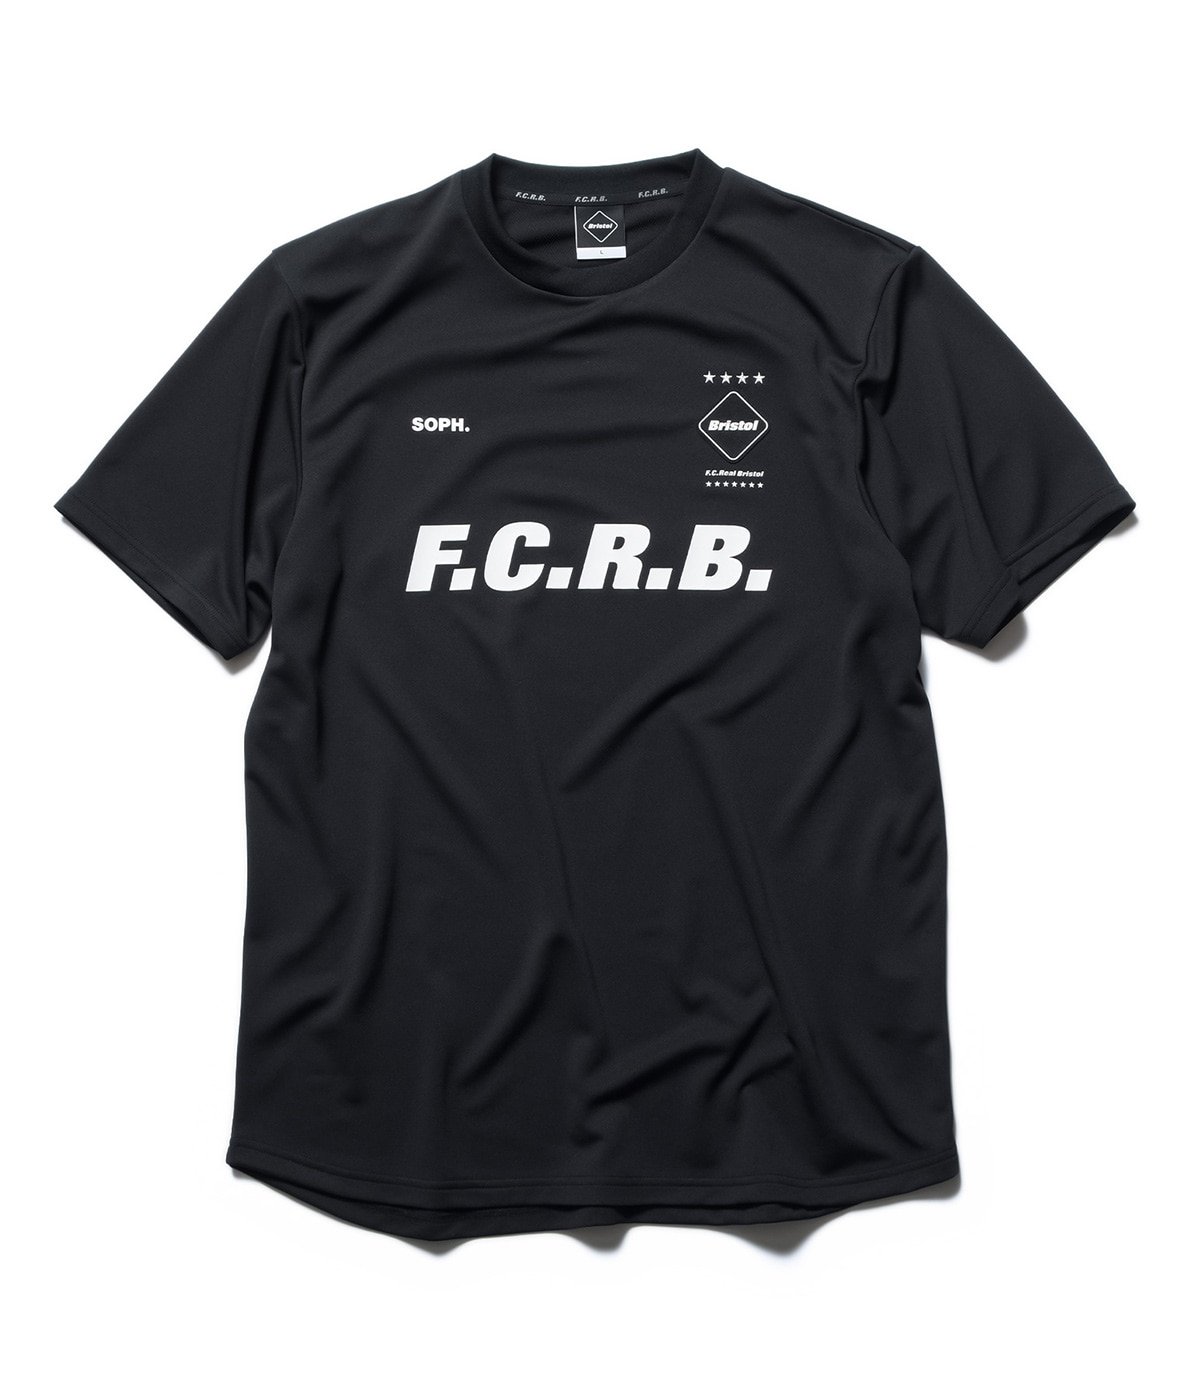 F.C.R.B. - F.C.R.B./F.C.Real Bristol/FCRB エフシーアールビー